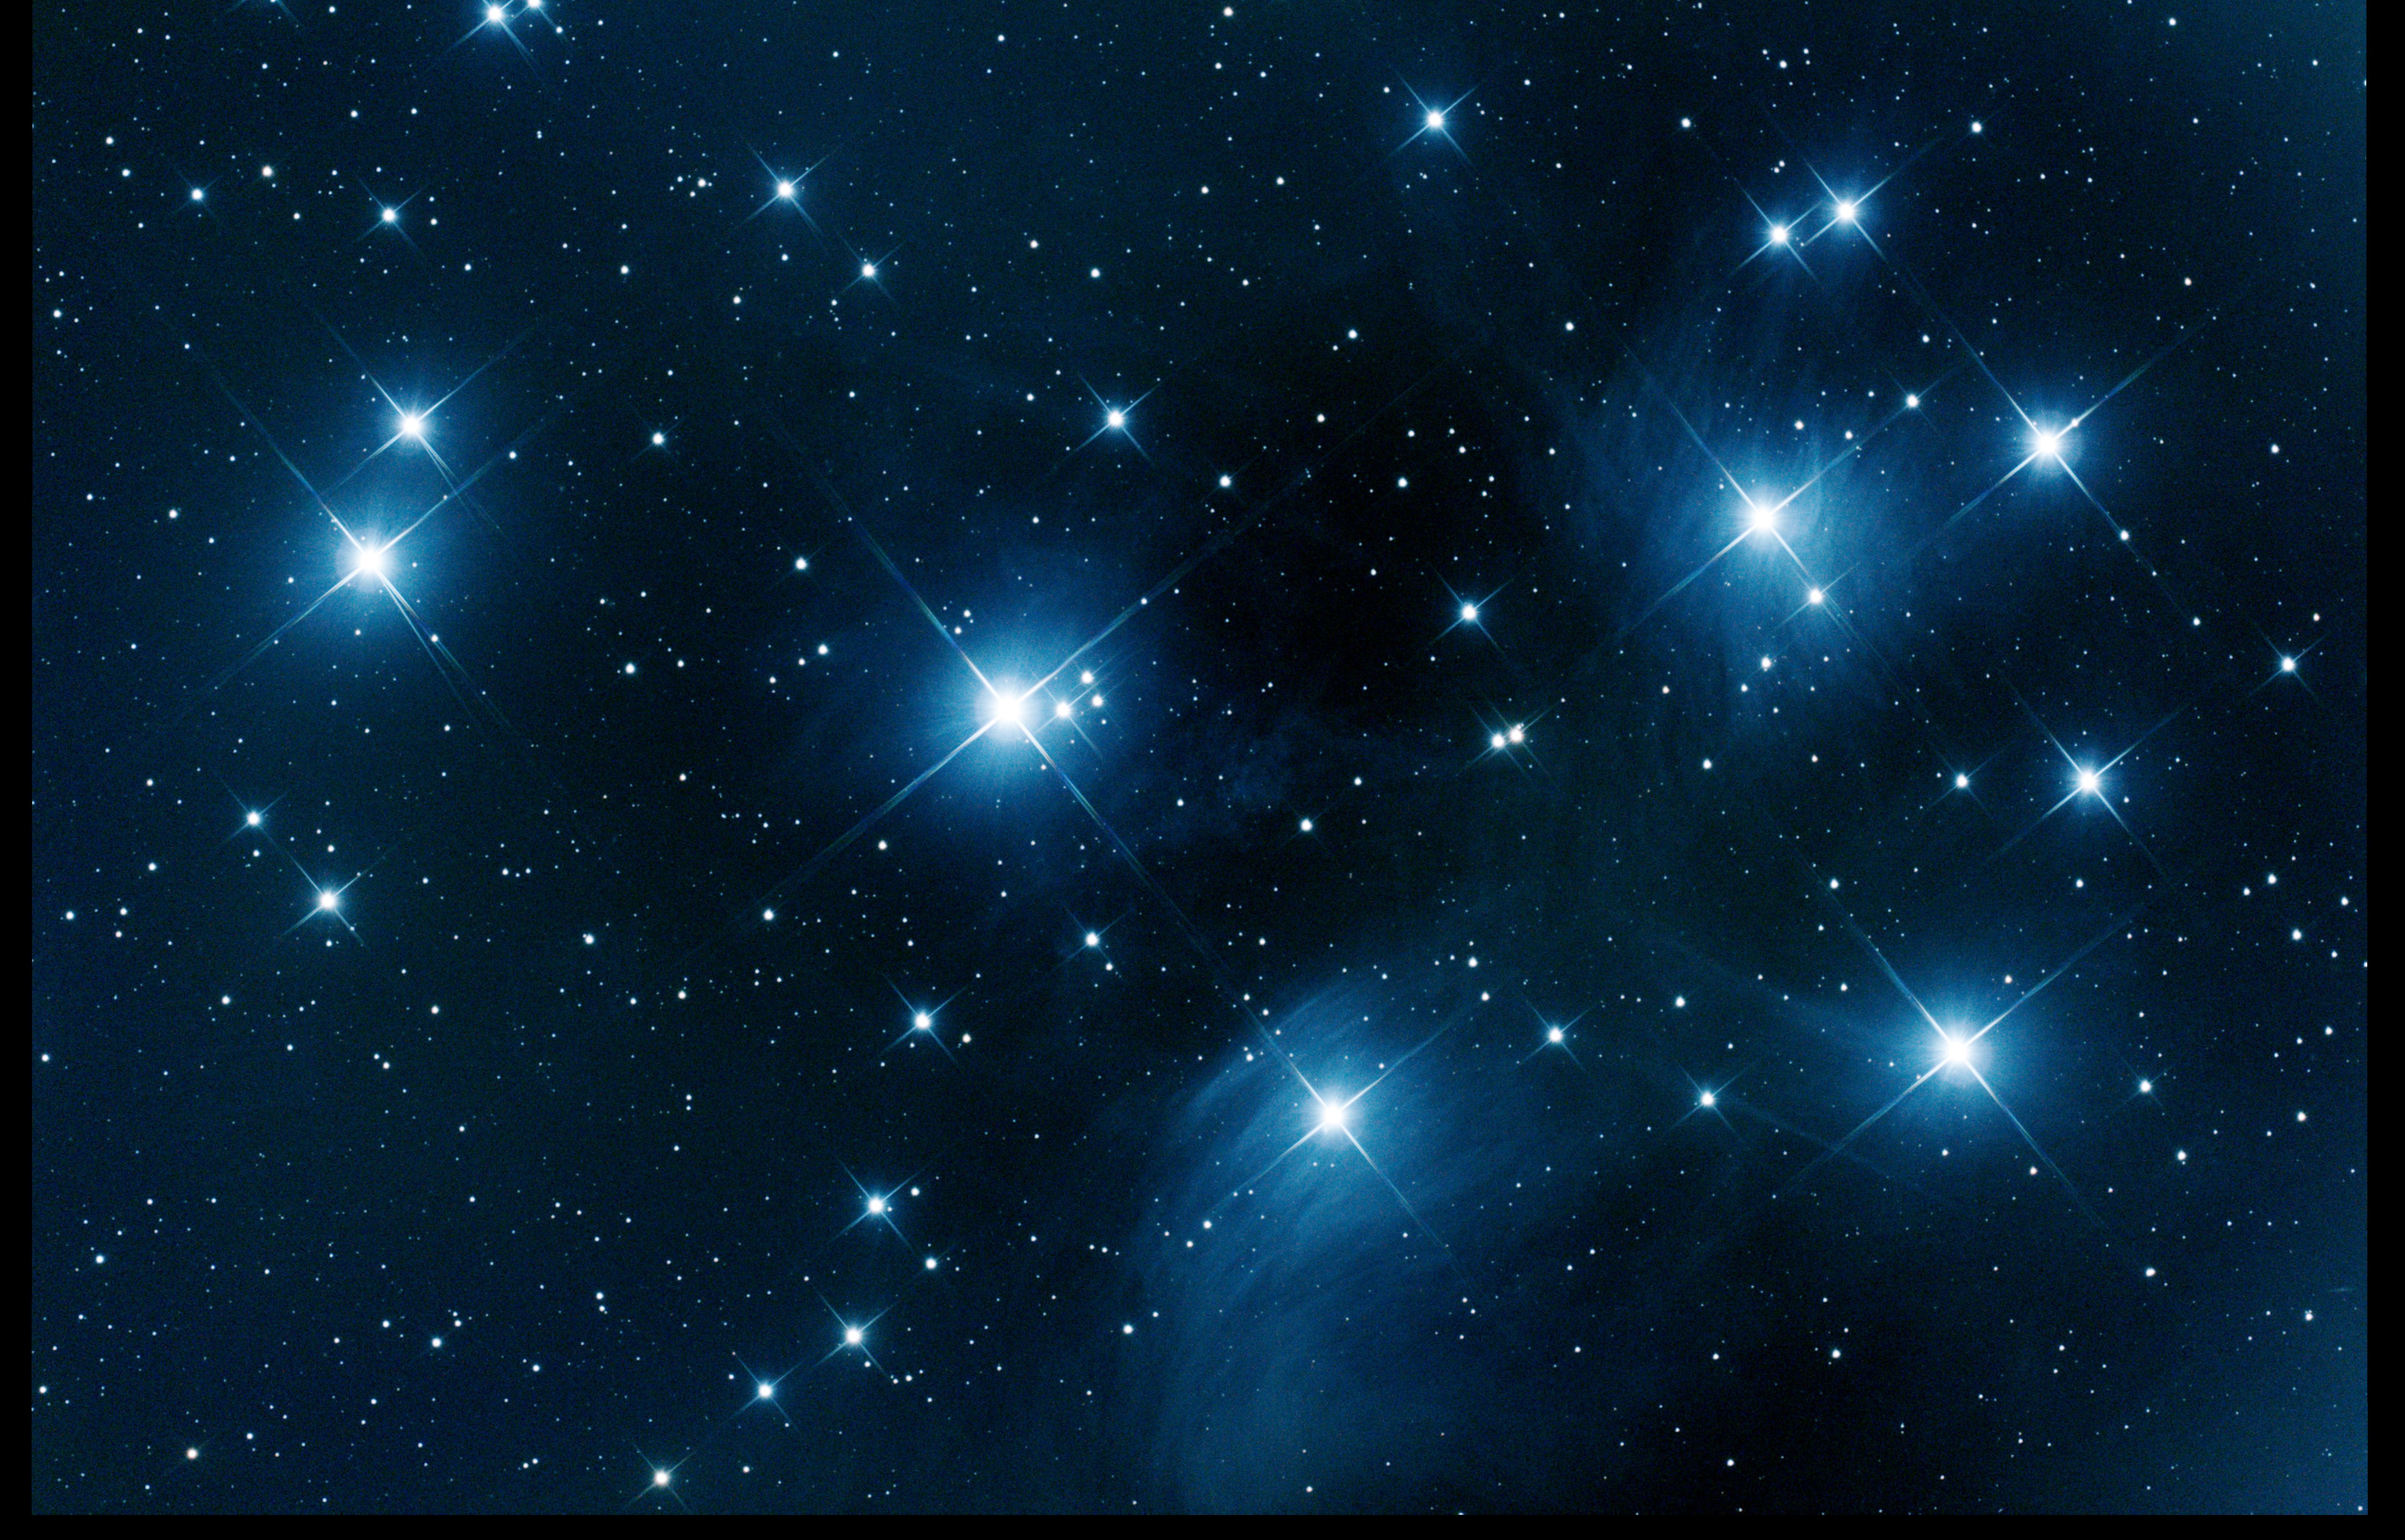 Pleiades, January 2021 version